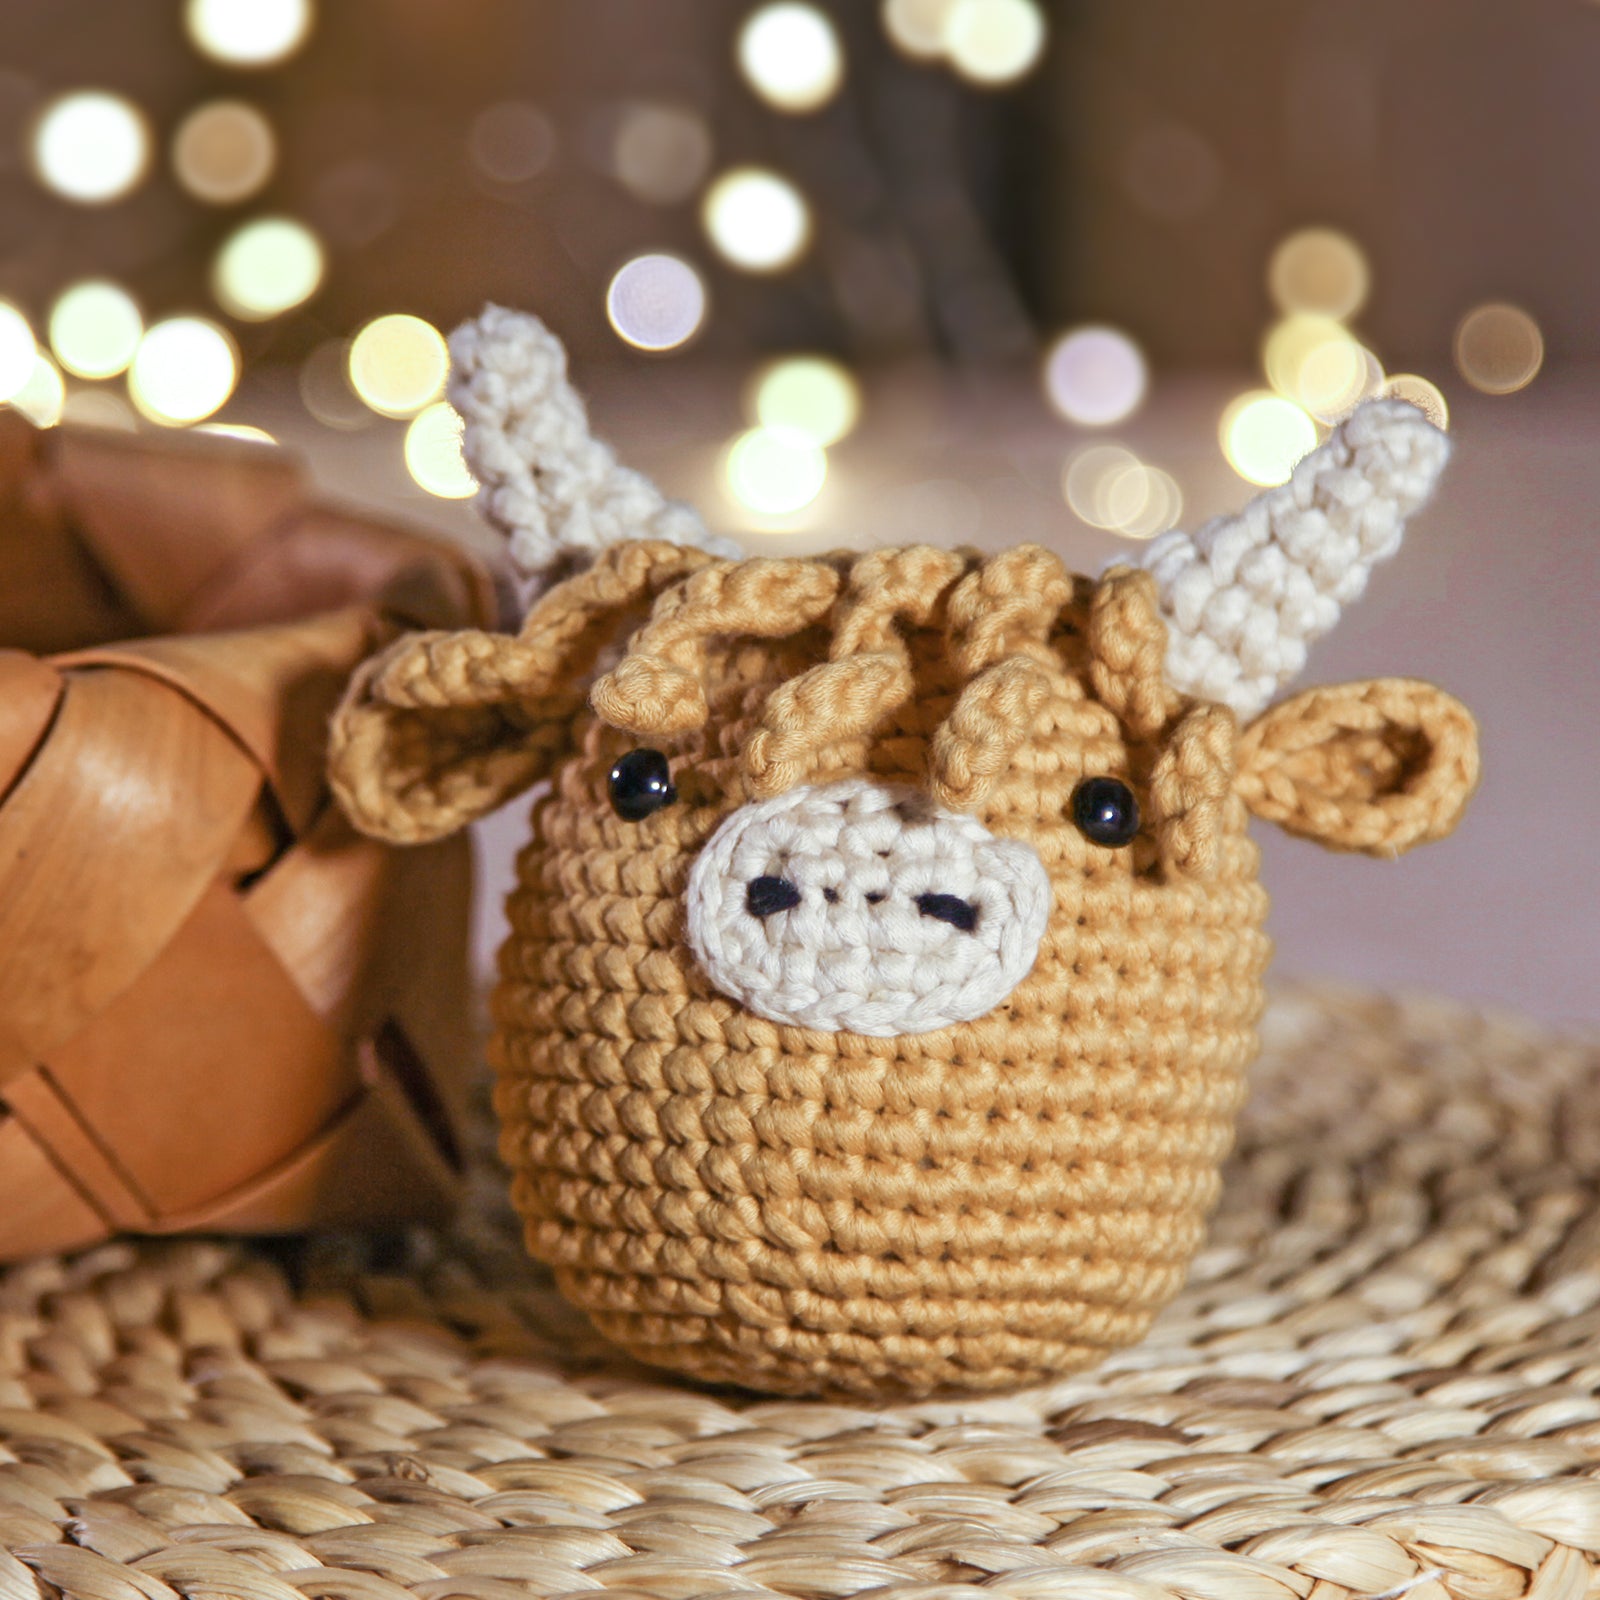 Axolotl lying - CrochetBox Complete Crochet Kit for Beginners